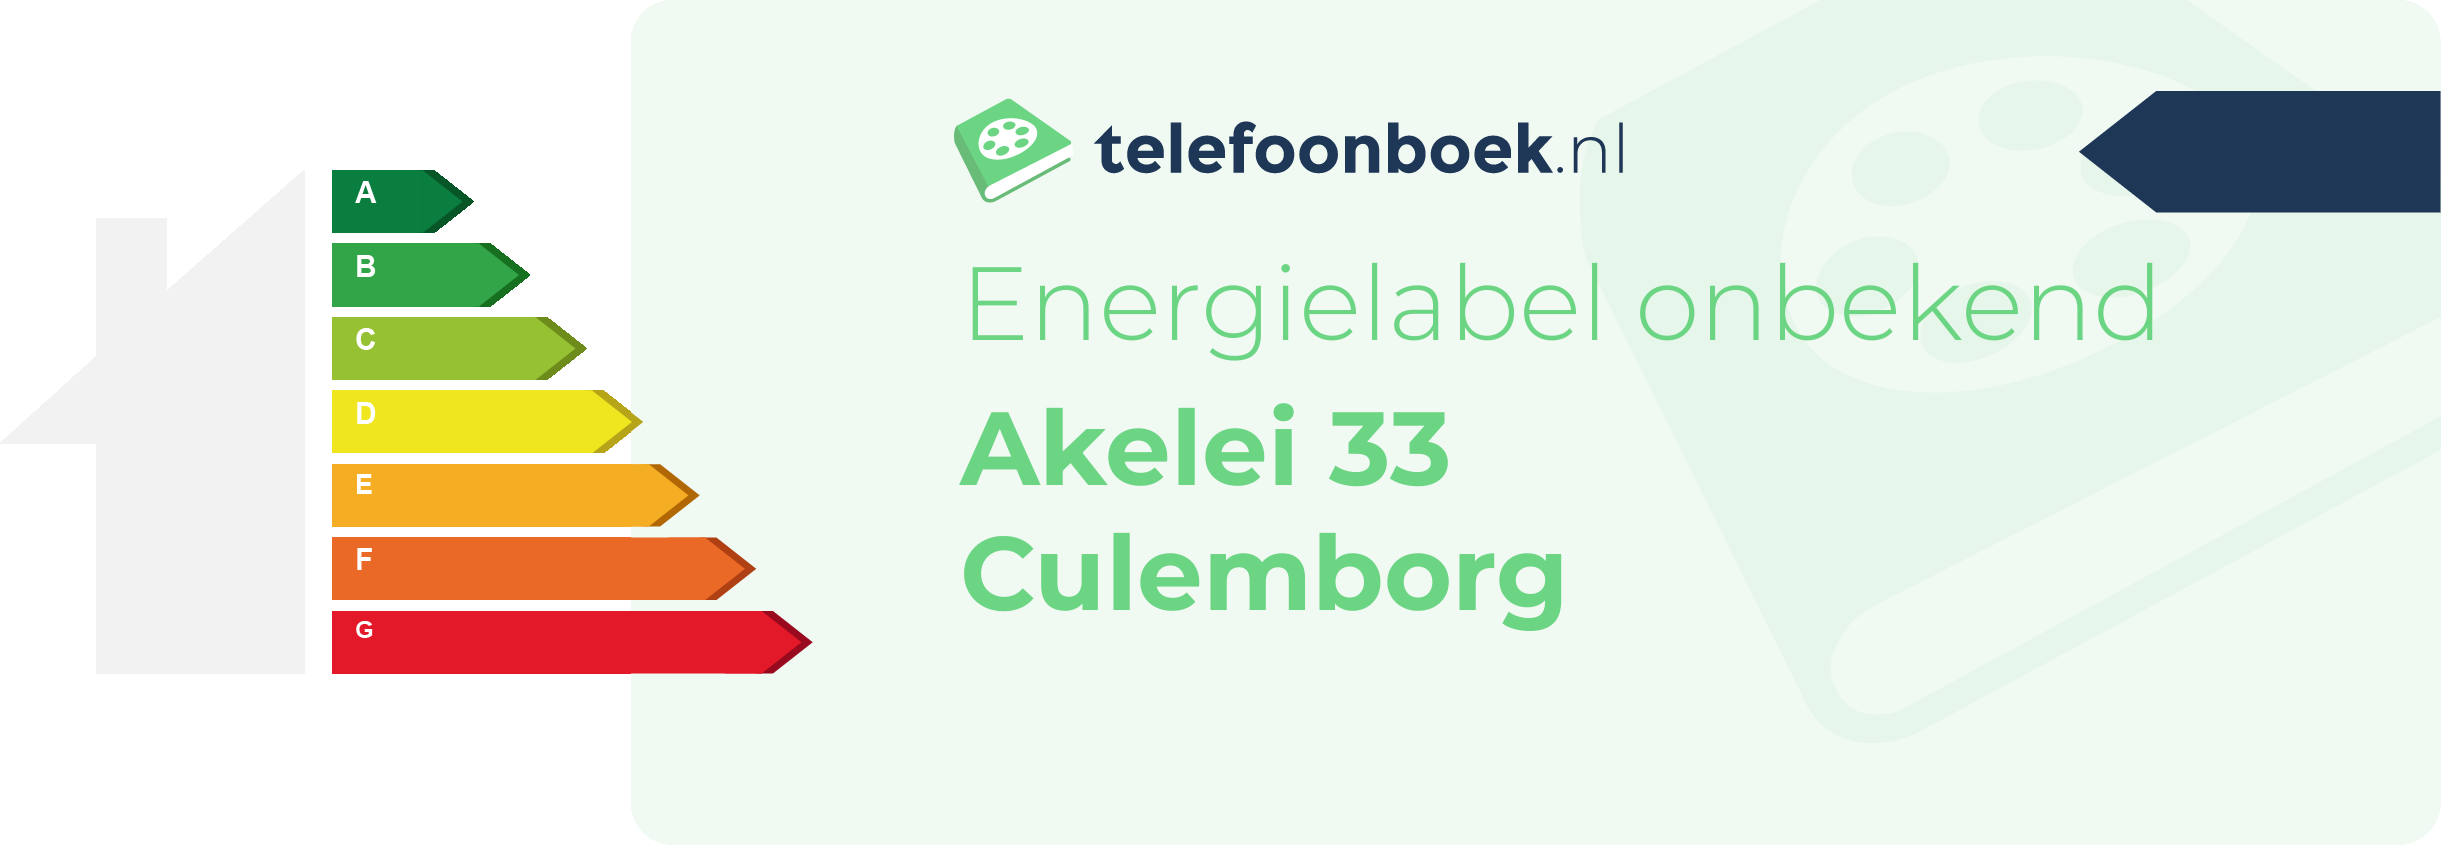 Energielabel Akelei 33 Culemborg